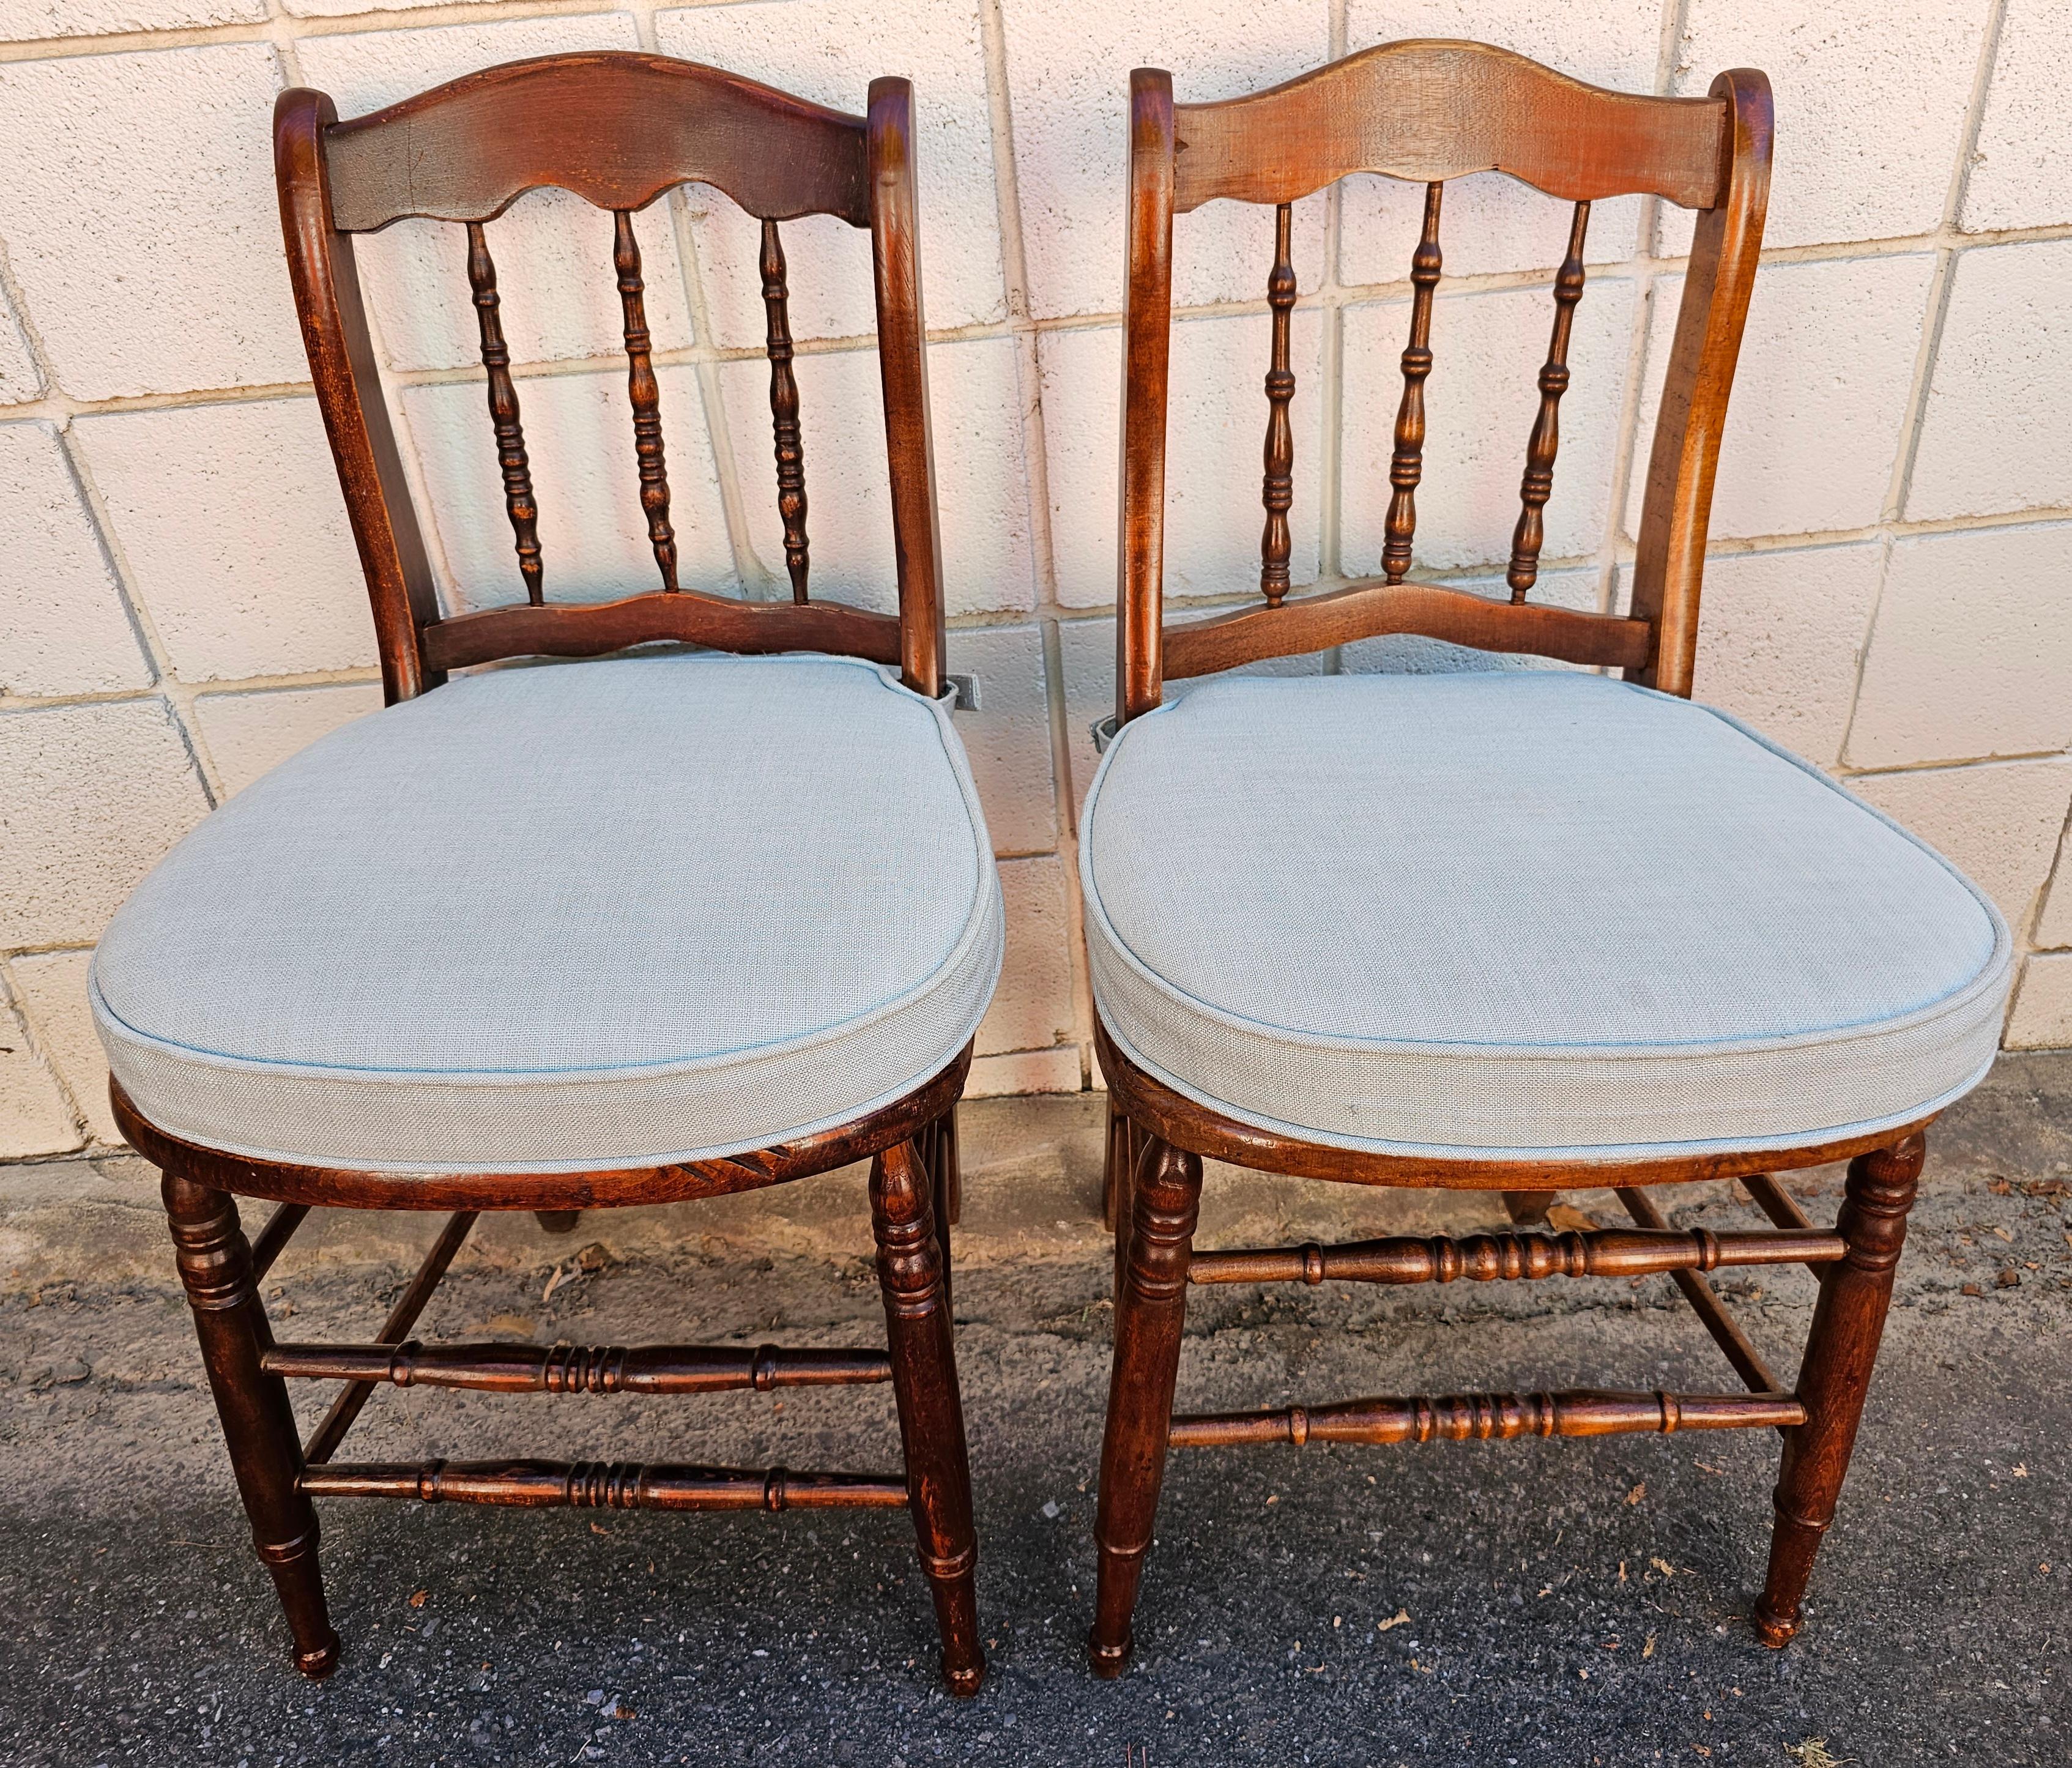 Paar viktorianische Mahagoni Spindel zurück und Cane Seat Side Chairs mit benutzerdefinierten Kissen in gutem antiken Zustand. Benutzerdefinierte Kissen mit Reißverschluss (blauer Himmel) in gutem Zustand. Sie werden mit Klettverschluss an den